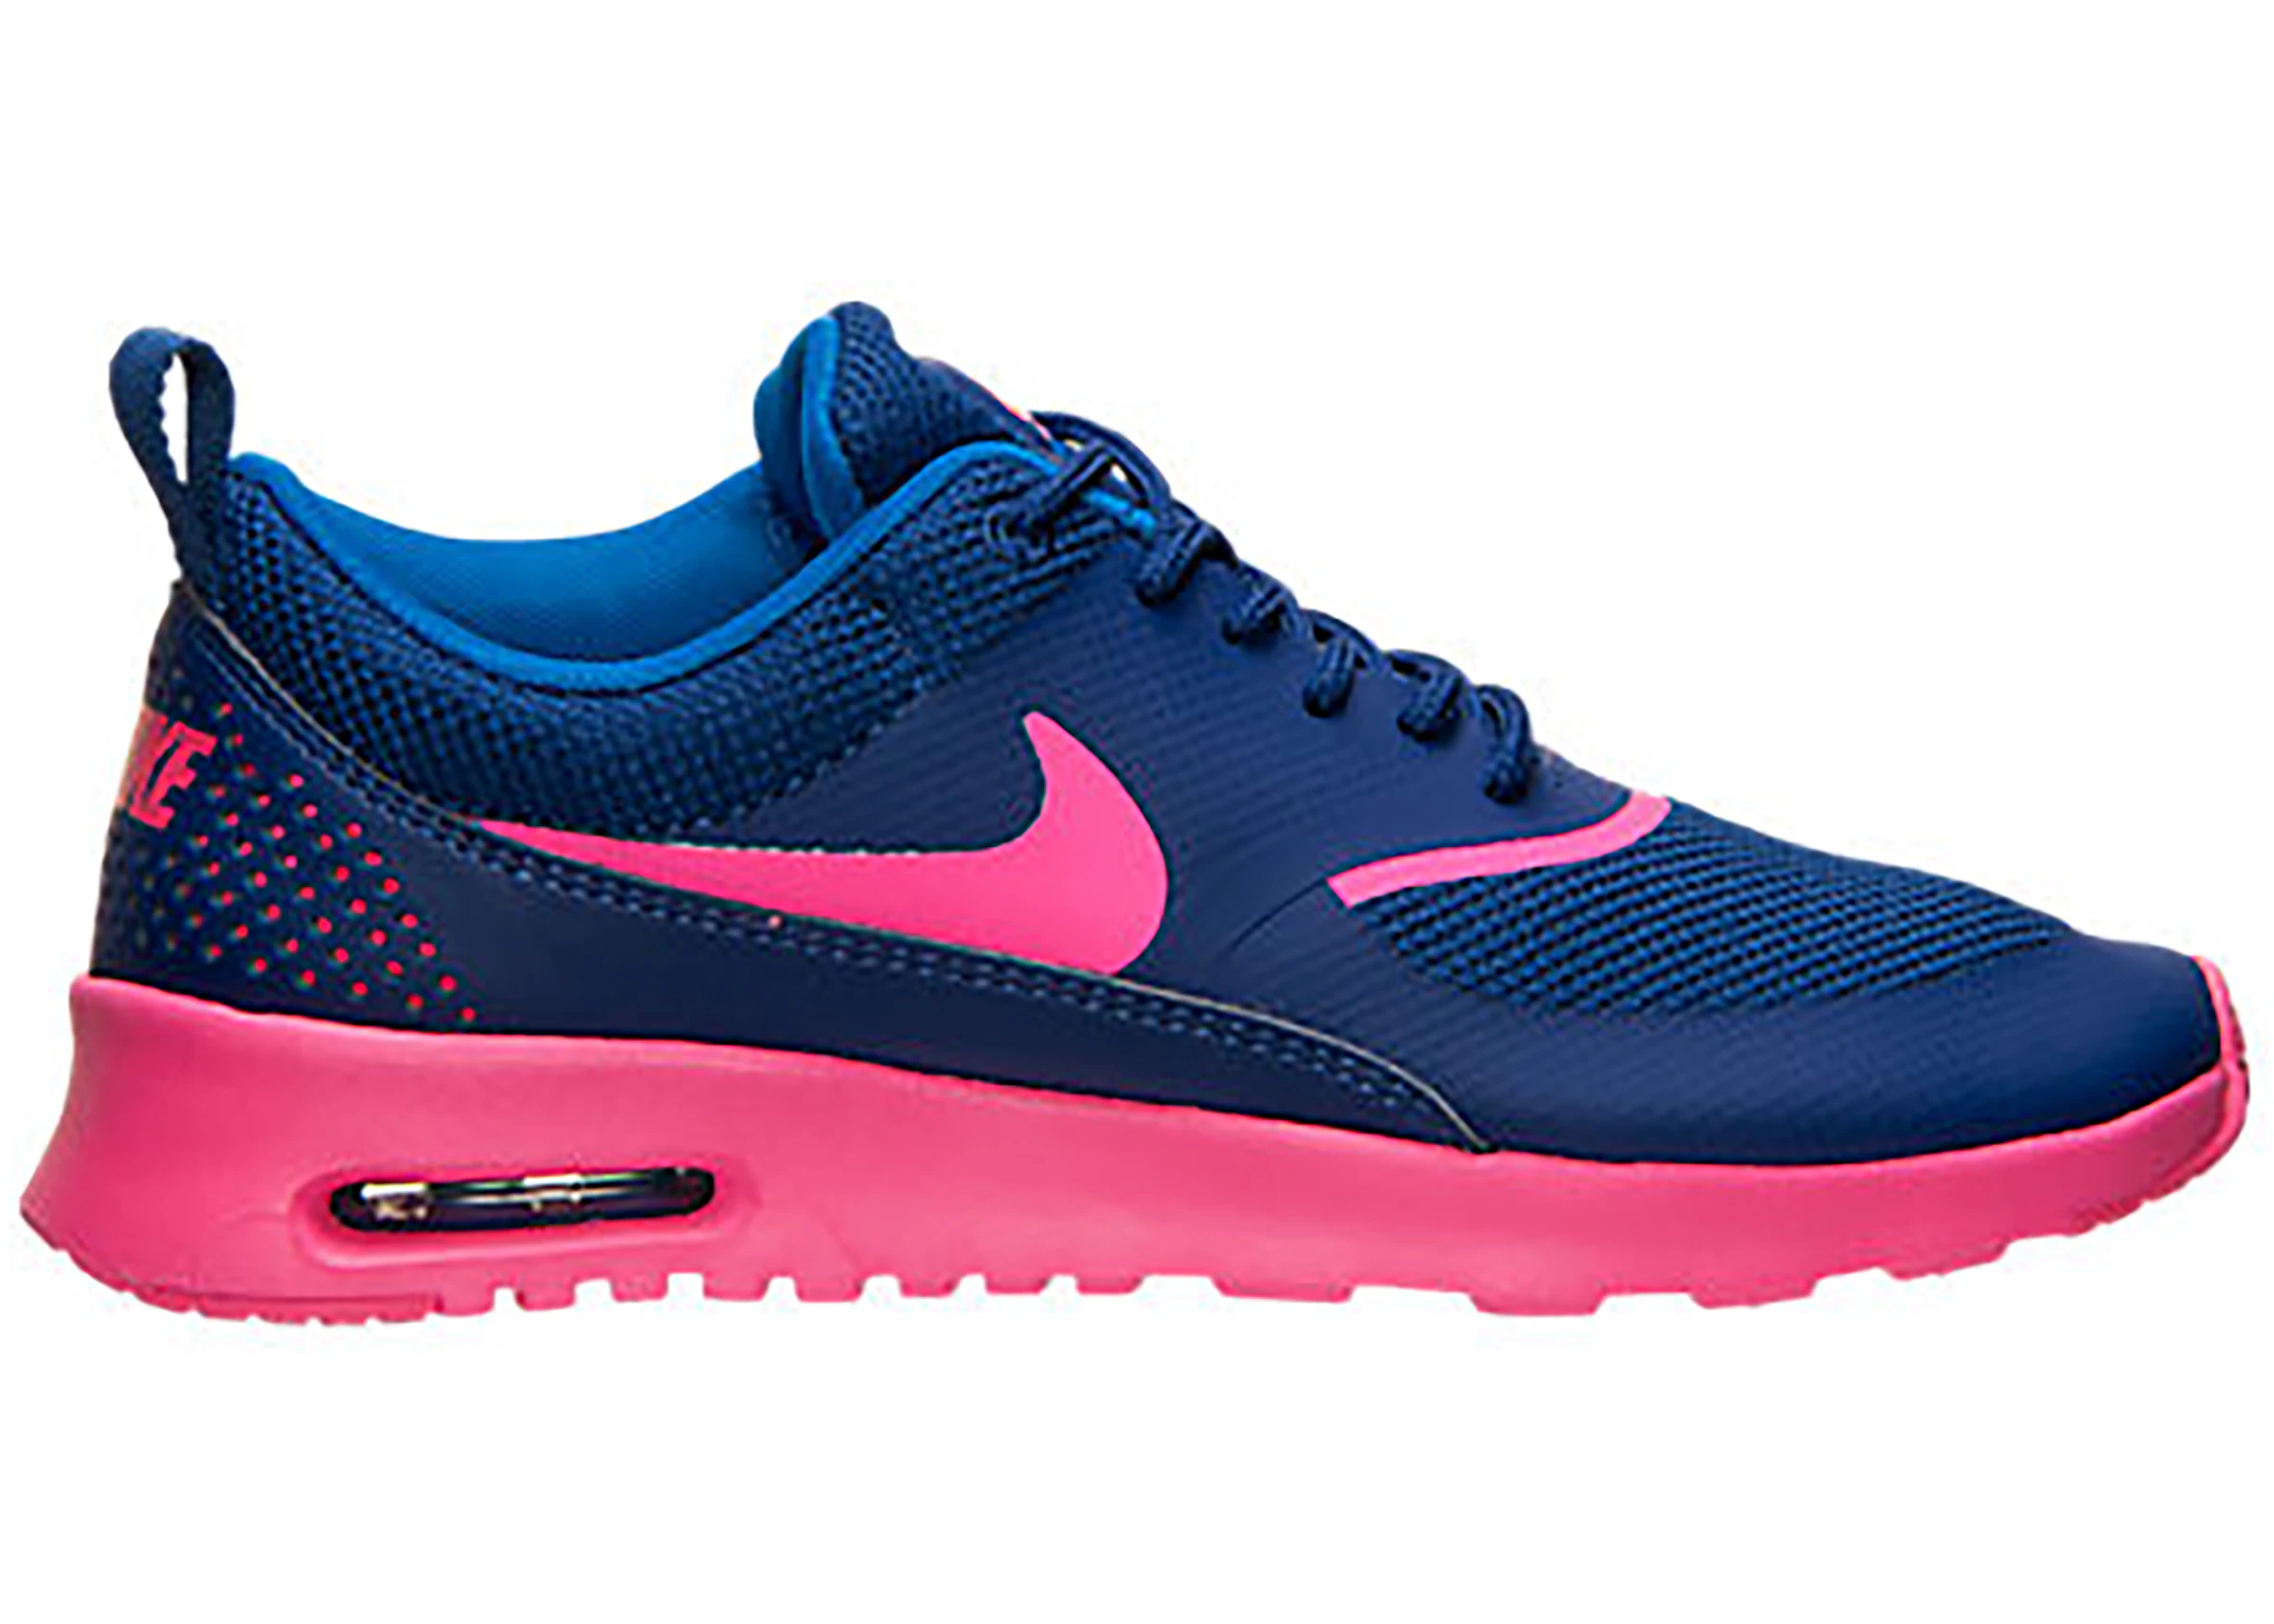 munitie blozen Onverenigbaar Nike Air Max Thea Deep Royal Blue Hyper Pink (Women's) - 599409-405 - US